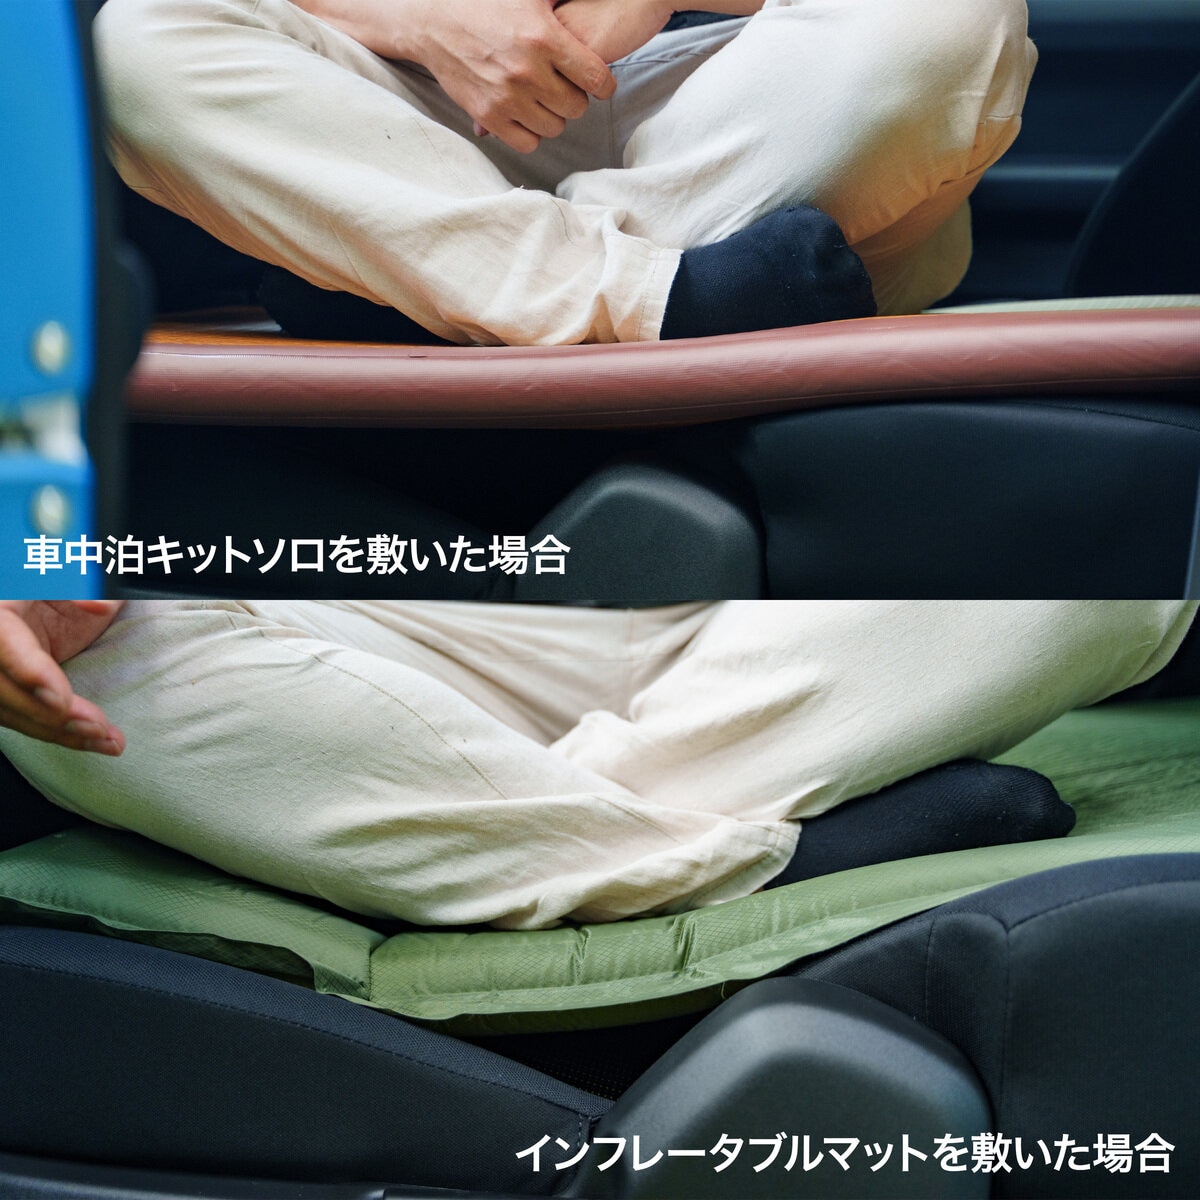 SHINOBI 車中泊エアマット Costco Japan